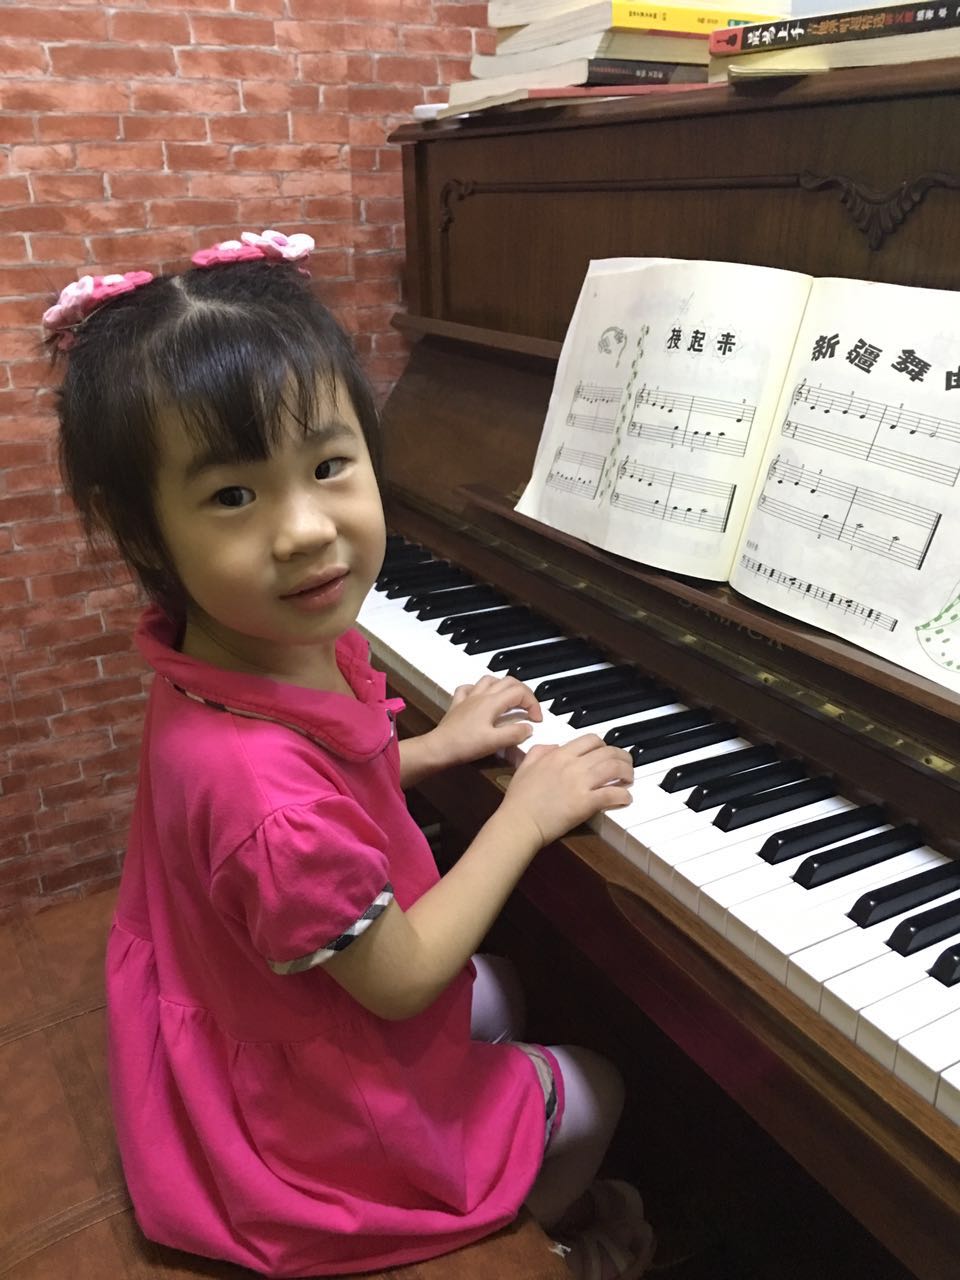 【我家女儿今年四岁了想送她去学钢琴,哪里有